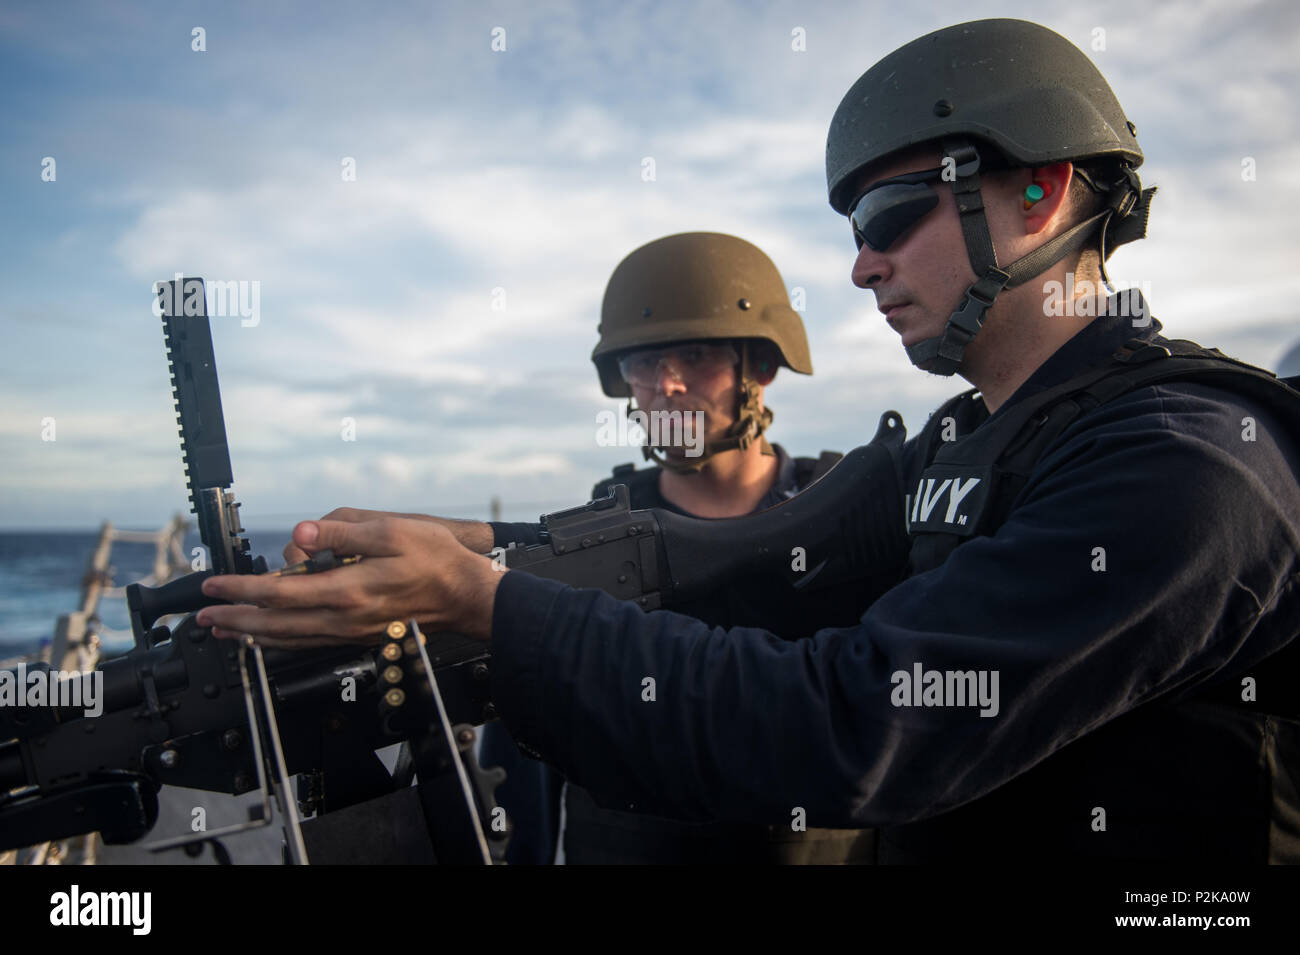 161001-N-NT265-169 Mare delle Filippine (ott. 1, 2016) Petty Officer di terza classe Maverik Timberlake, assegnato all'distribuita Arleigh Burke-class guidato-missile destroyer USS McCampbell (DDG 85) carichi di un M240 mitragliatrice durante un live-fire esercitazione. McCampbell è di pattuglia con un Carrier Strike gruppo cinque (CSG 5) nel Mare delle Filippine il supporto di sicurezza e stabilità nella Indo-Asia-regione del Pacifico. (U.S. Navy foto di Sottufficiali di seconda classe Senyk cristiana/rilasciato) Foto Stock